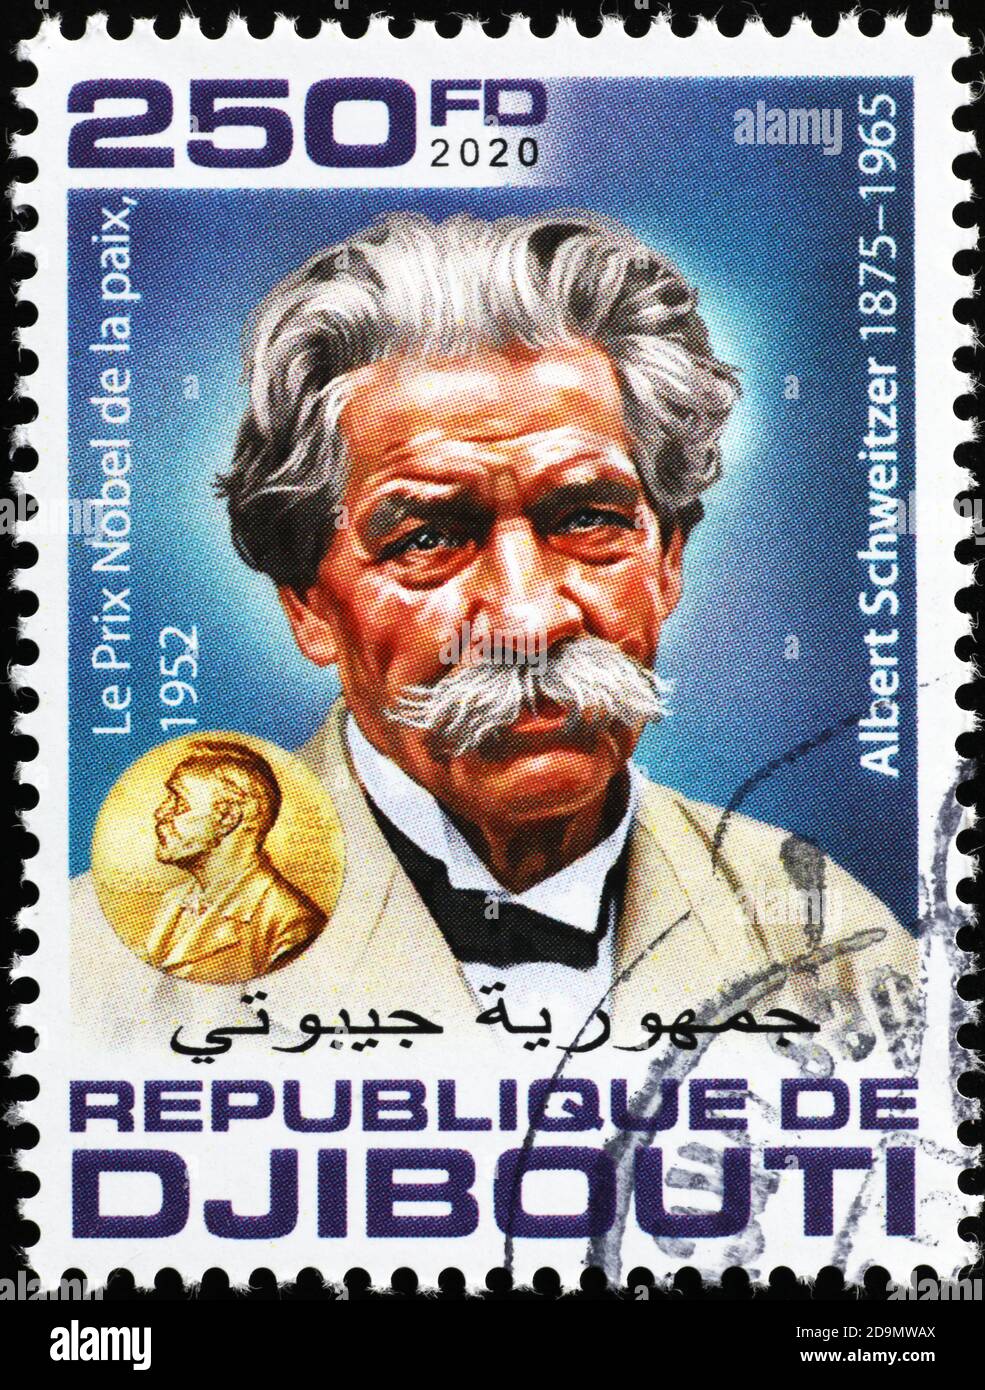 Nobel prize Albert Schweitzer on postage stamp Stock Photo